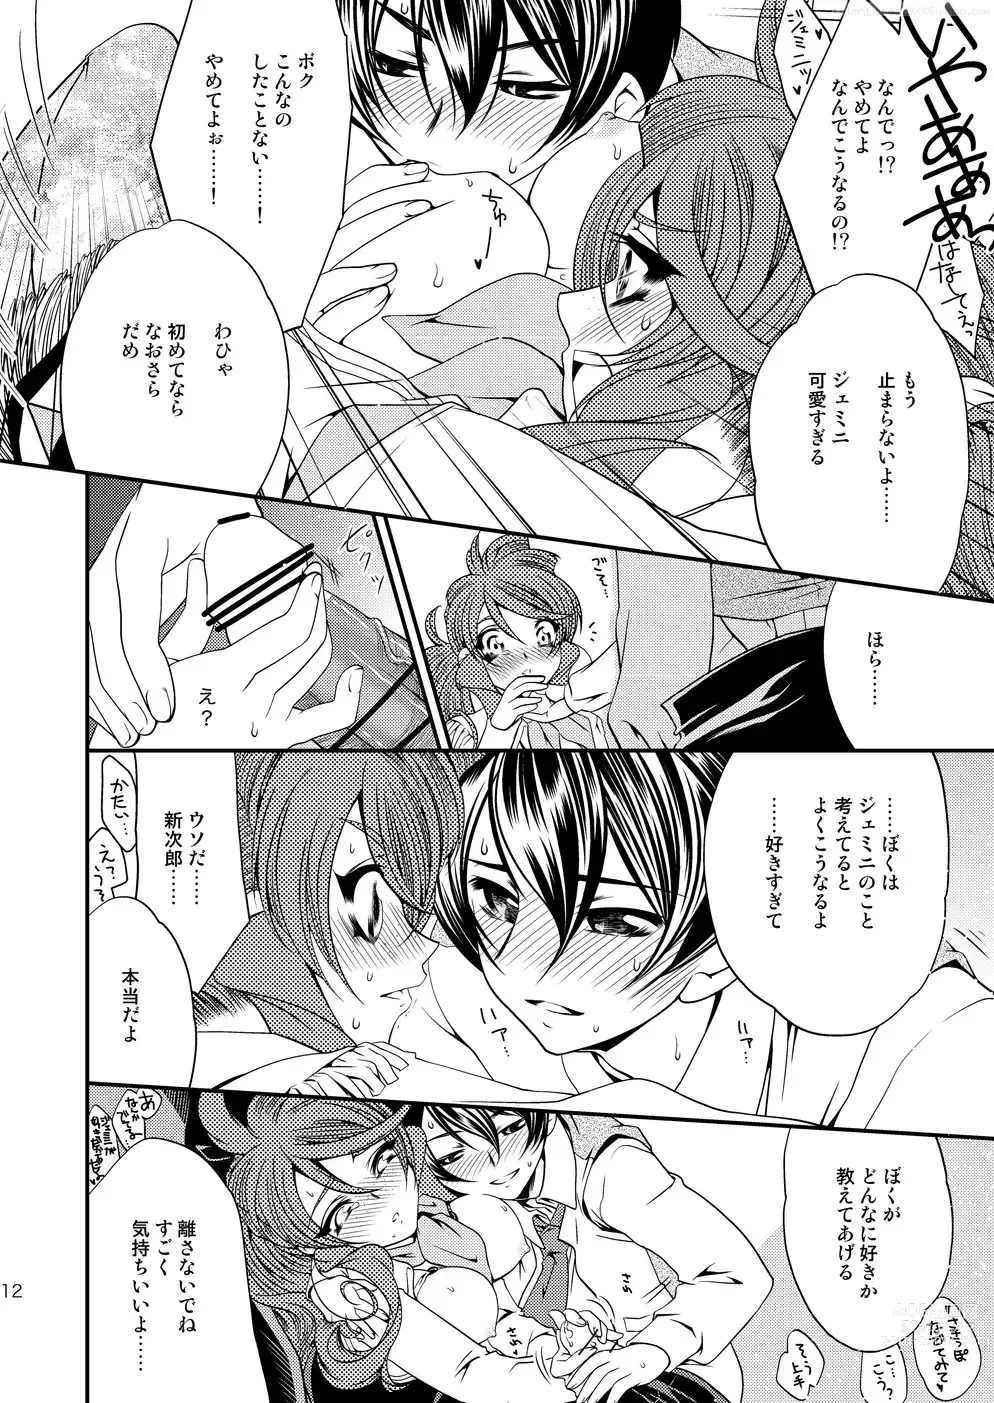 Page 11 of doujinshi Maru Maru Mori Mori na Okusuri no Sei de Gemini-san ga Kiss o Nedaru